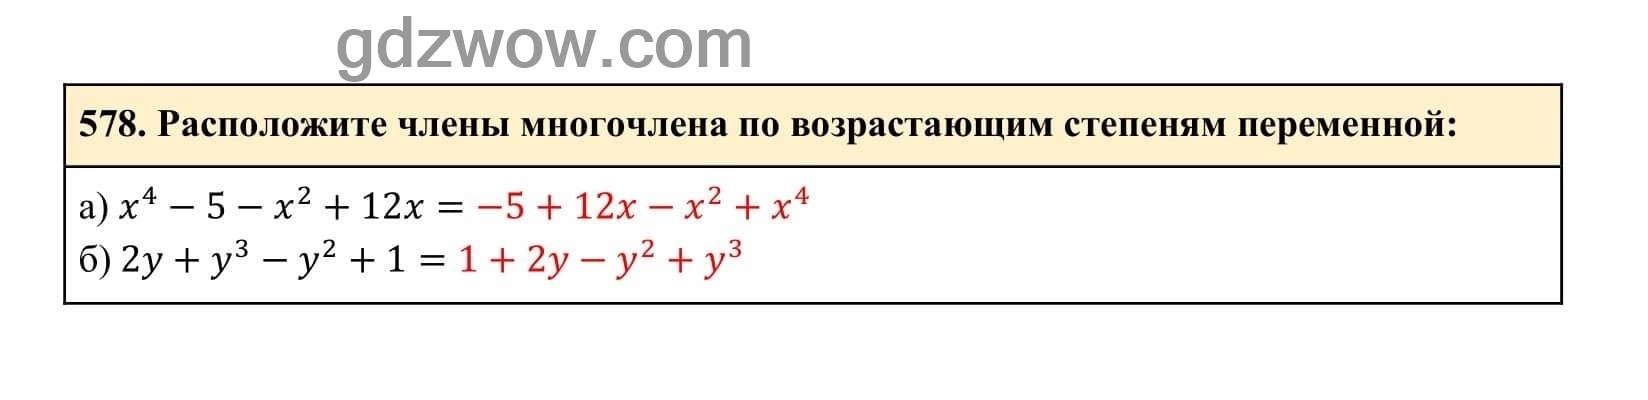 Упражнение 578 - ГДЗ по Алгебре 7 класс Учебник Макарычев (решебник) - GDZwow